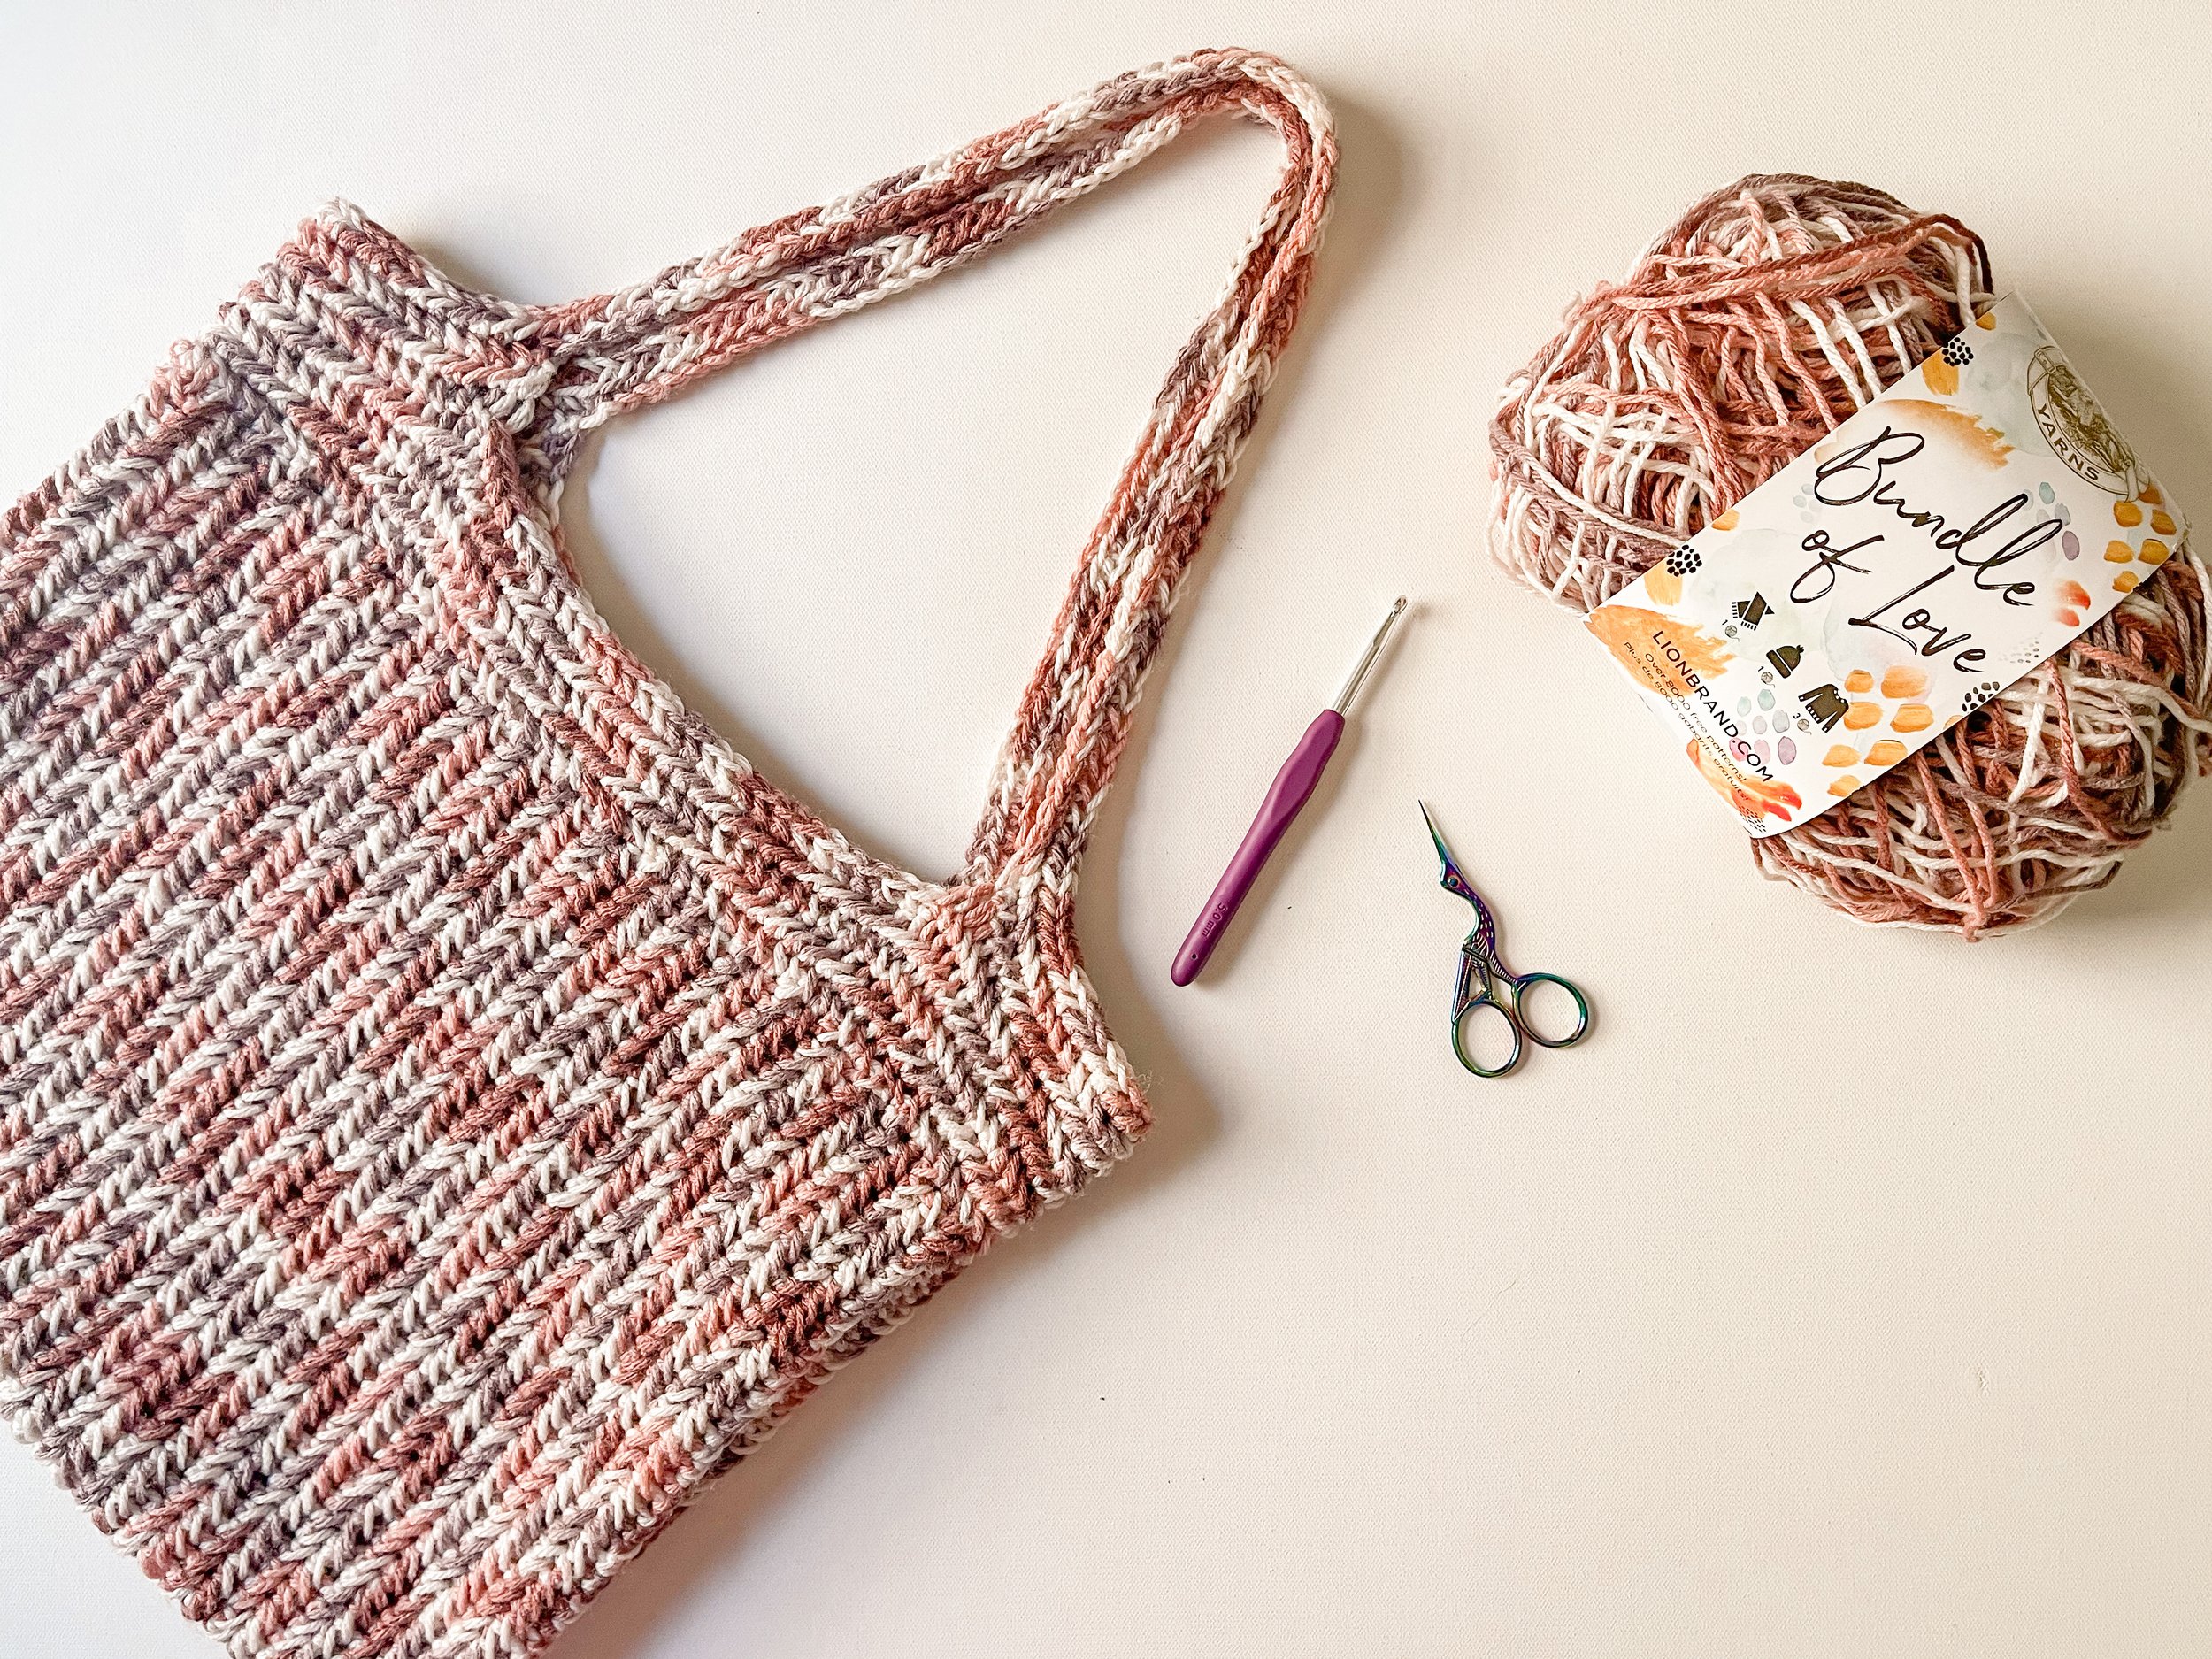 Crochet Tote Bag - Beginner Friendly - YouTube